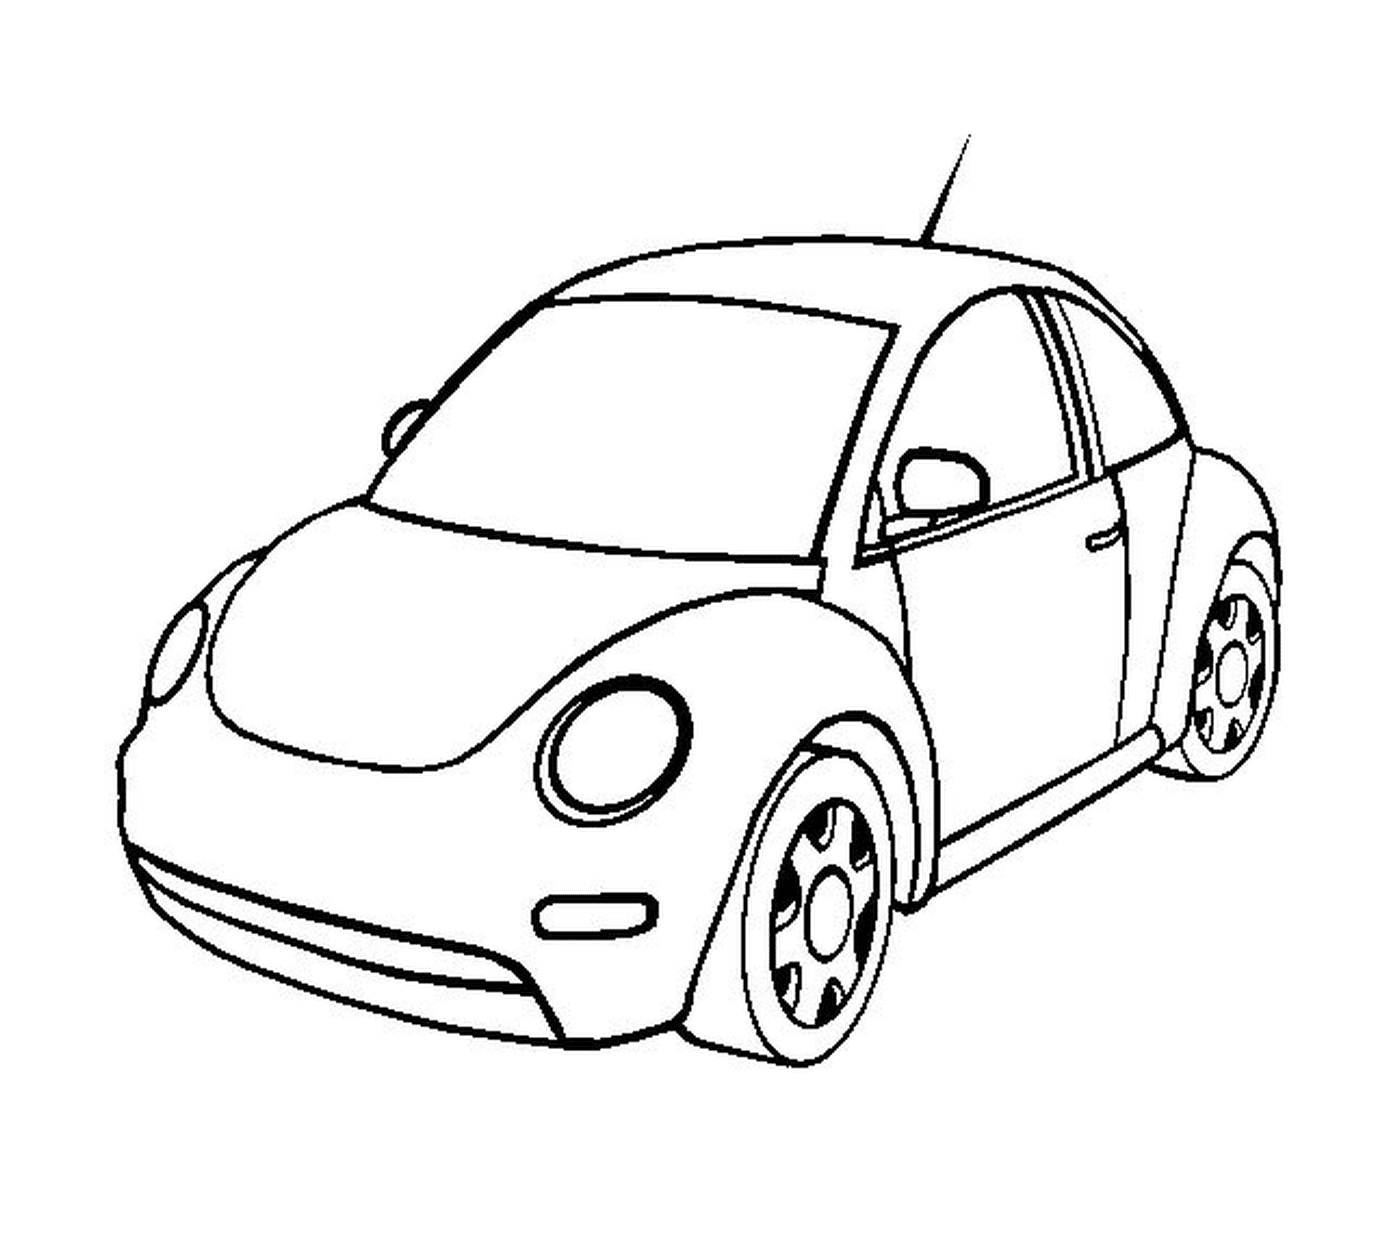  Desenhar o carro da senhora 